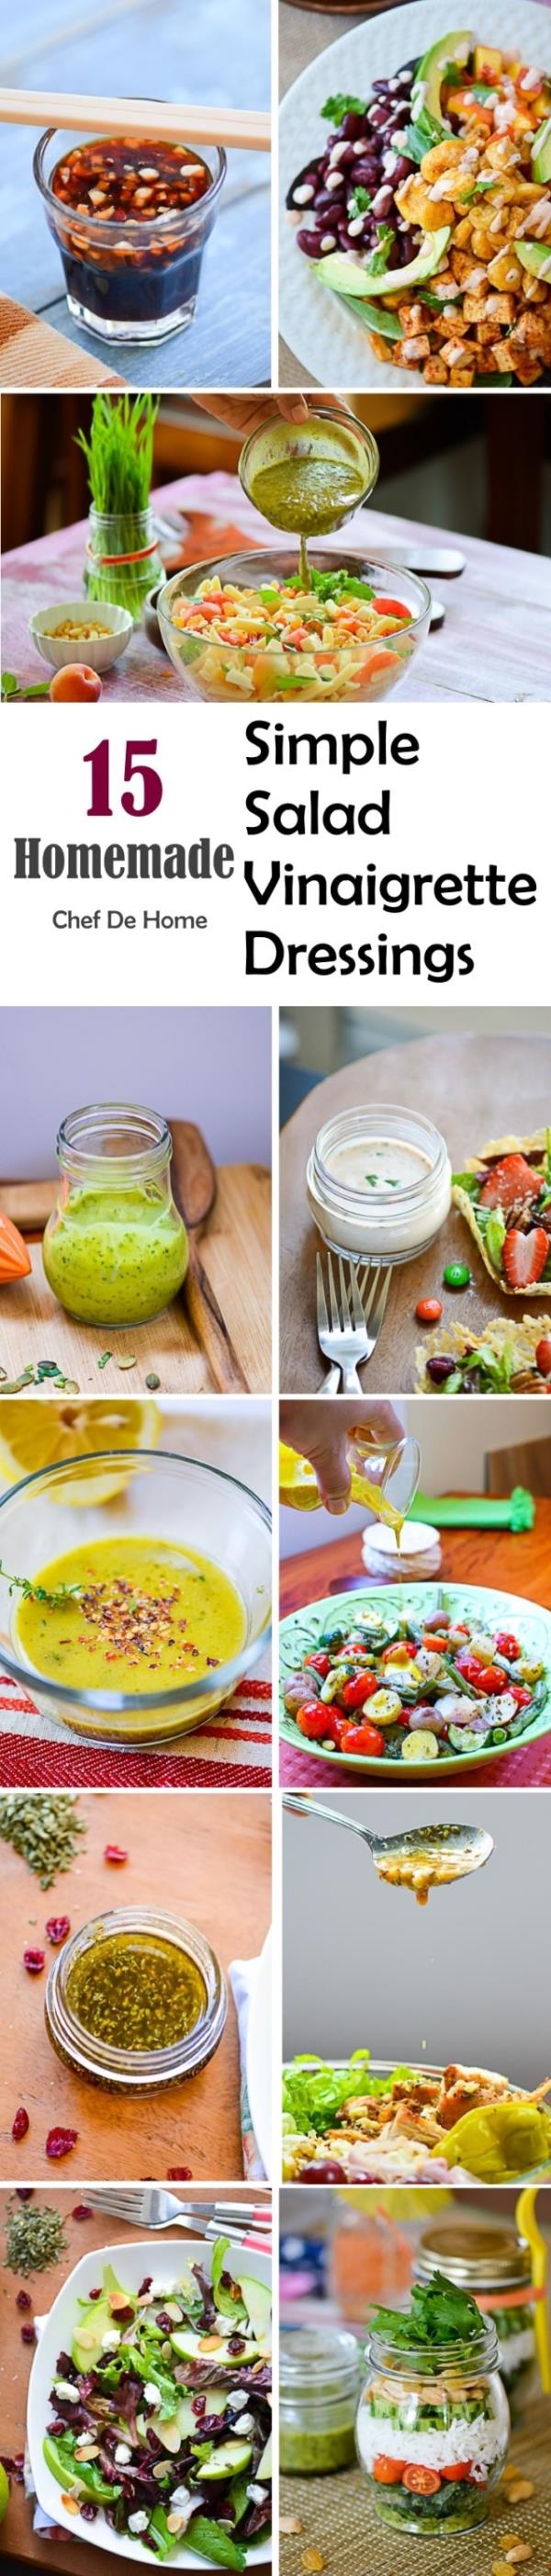 15 Homemade Simple Salad Vinaigrette Dressings Meals - ChefDeHome.com